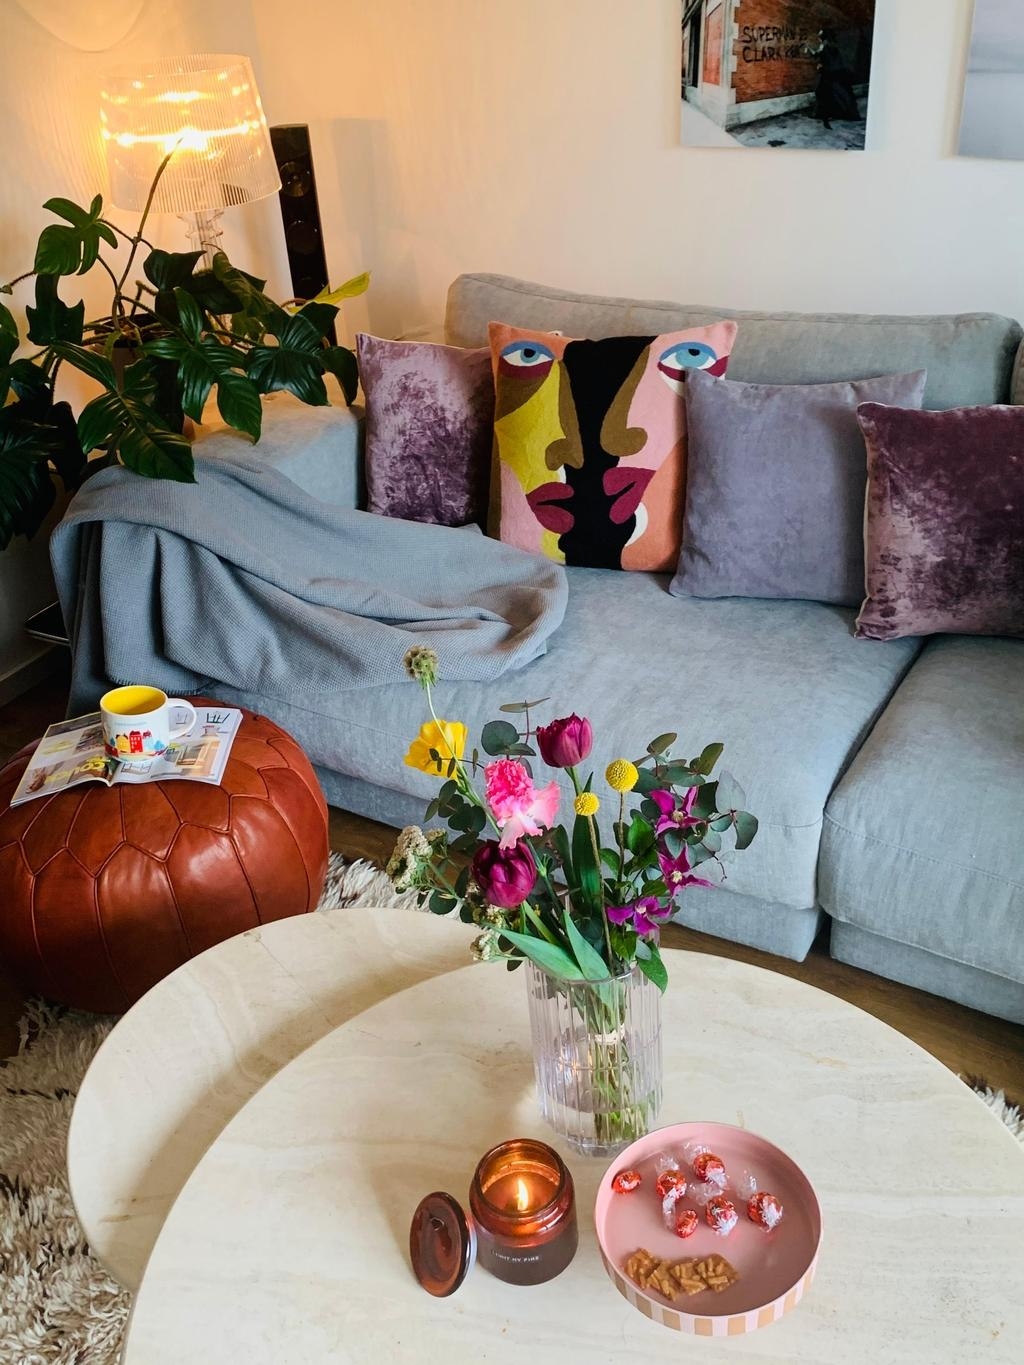 #lieblingsraum #wohnzimmer #livingroom #hygge # flowers             #berberteppich #couchtisch# marmor #livingchellange